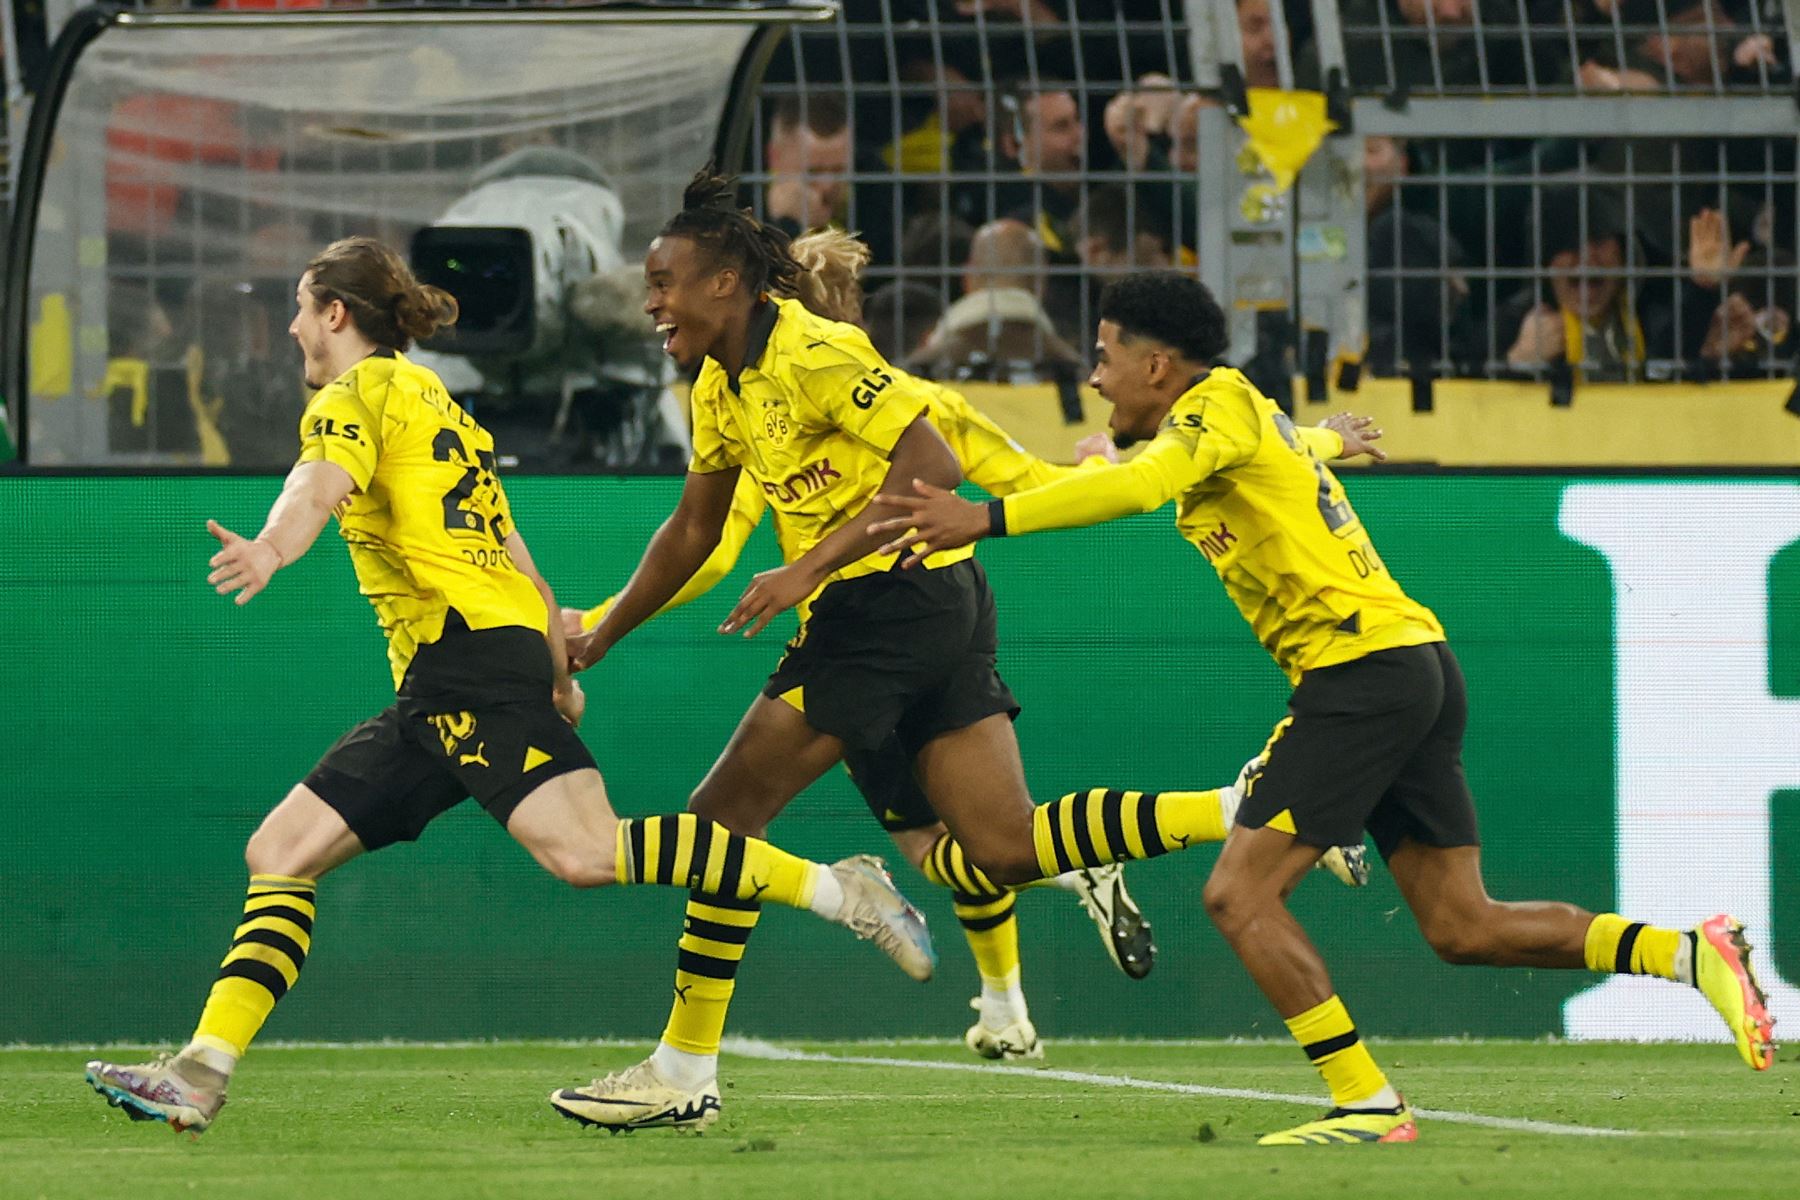 El centrocampista austriaco de Dortmund Marcel Sabitzer celebra marcar el gol 4-2 con sus compañeros de equipo durante el partido de fútbol de vuelta de los cuartos de final de la Liga de Campeones de la UEFA entre el Borussia Dortmund y el Atlético de Madrid en Dortmund.
Foto: AFP